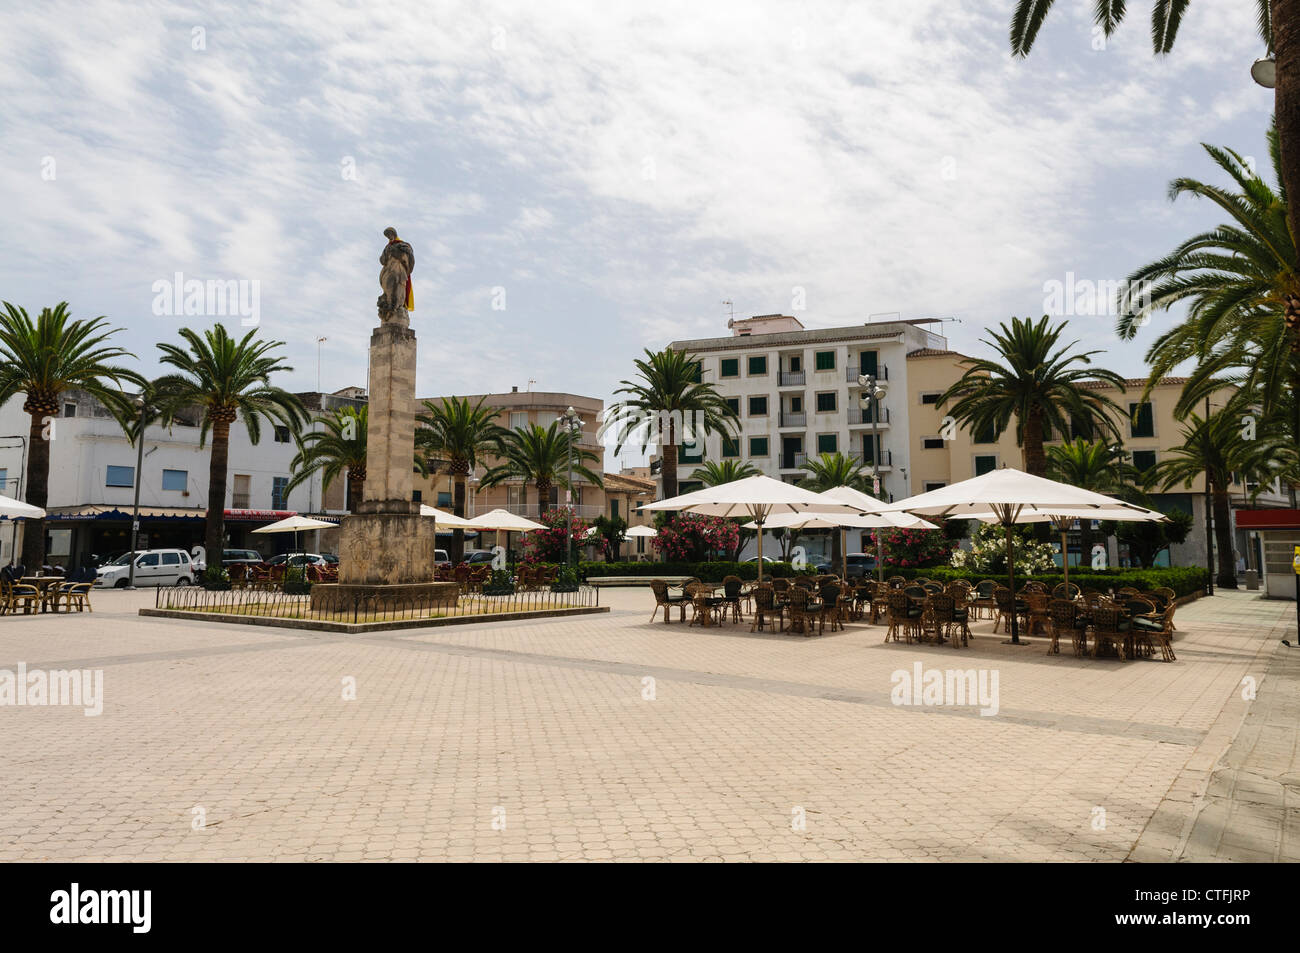 Ristorante le tabelle nella piazza principale, Felanitx, Mallorca/Maiorca Foto Stock